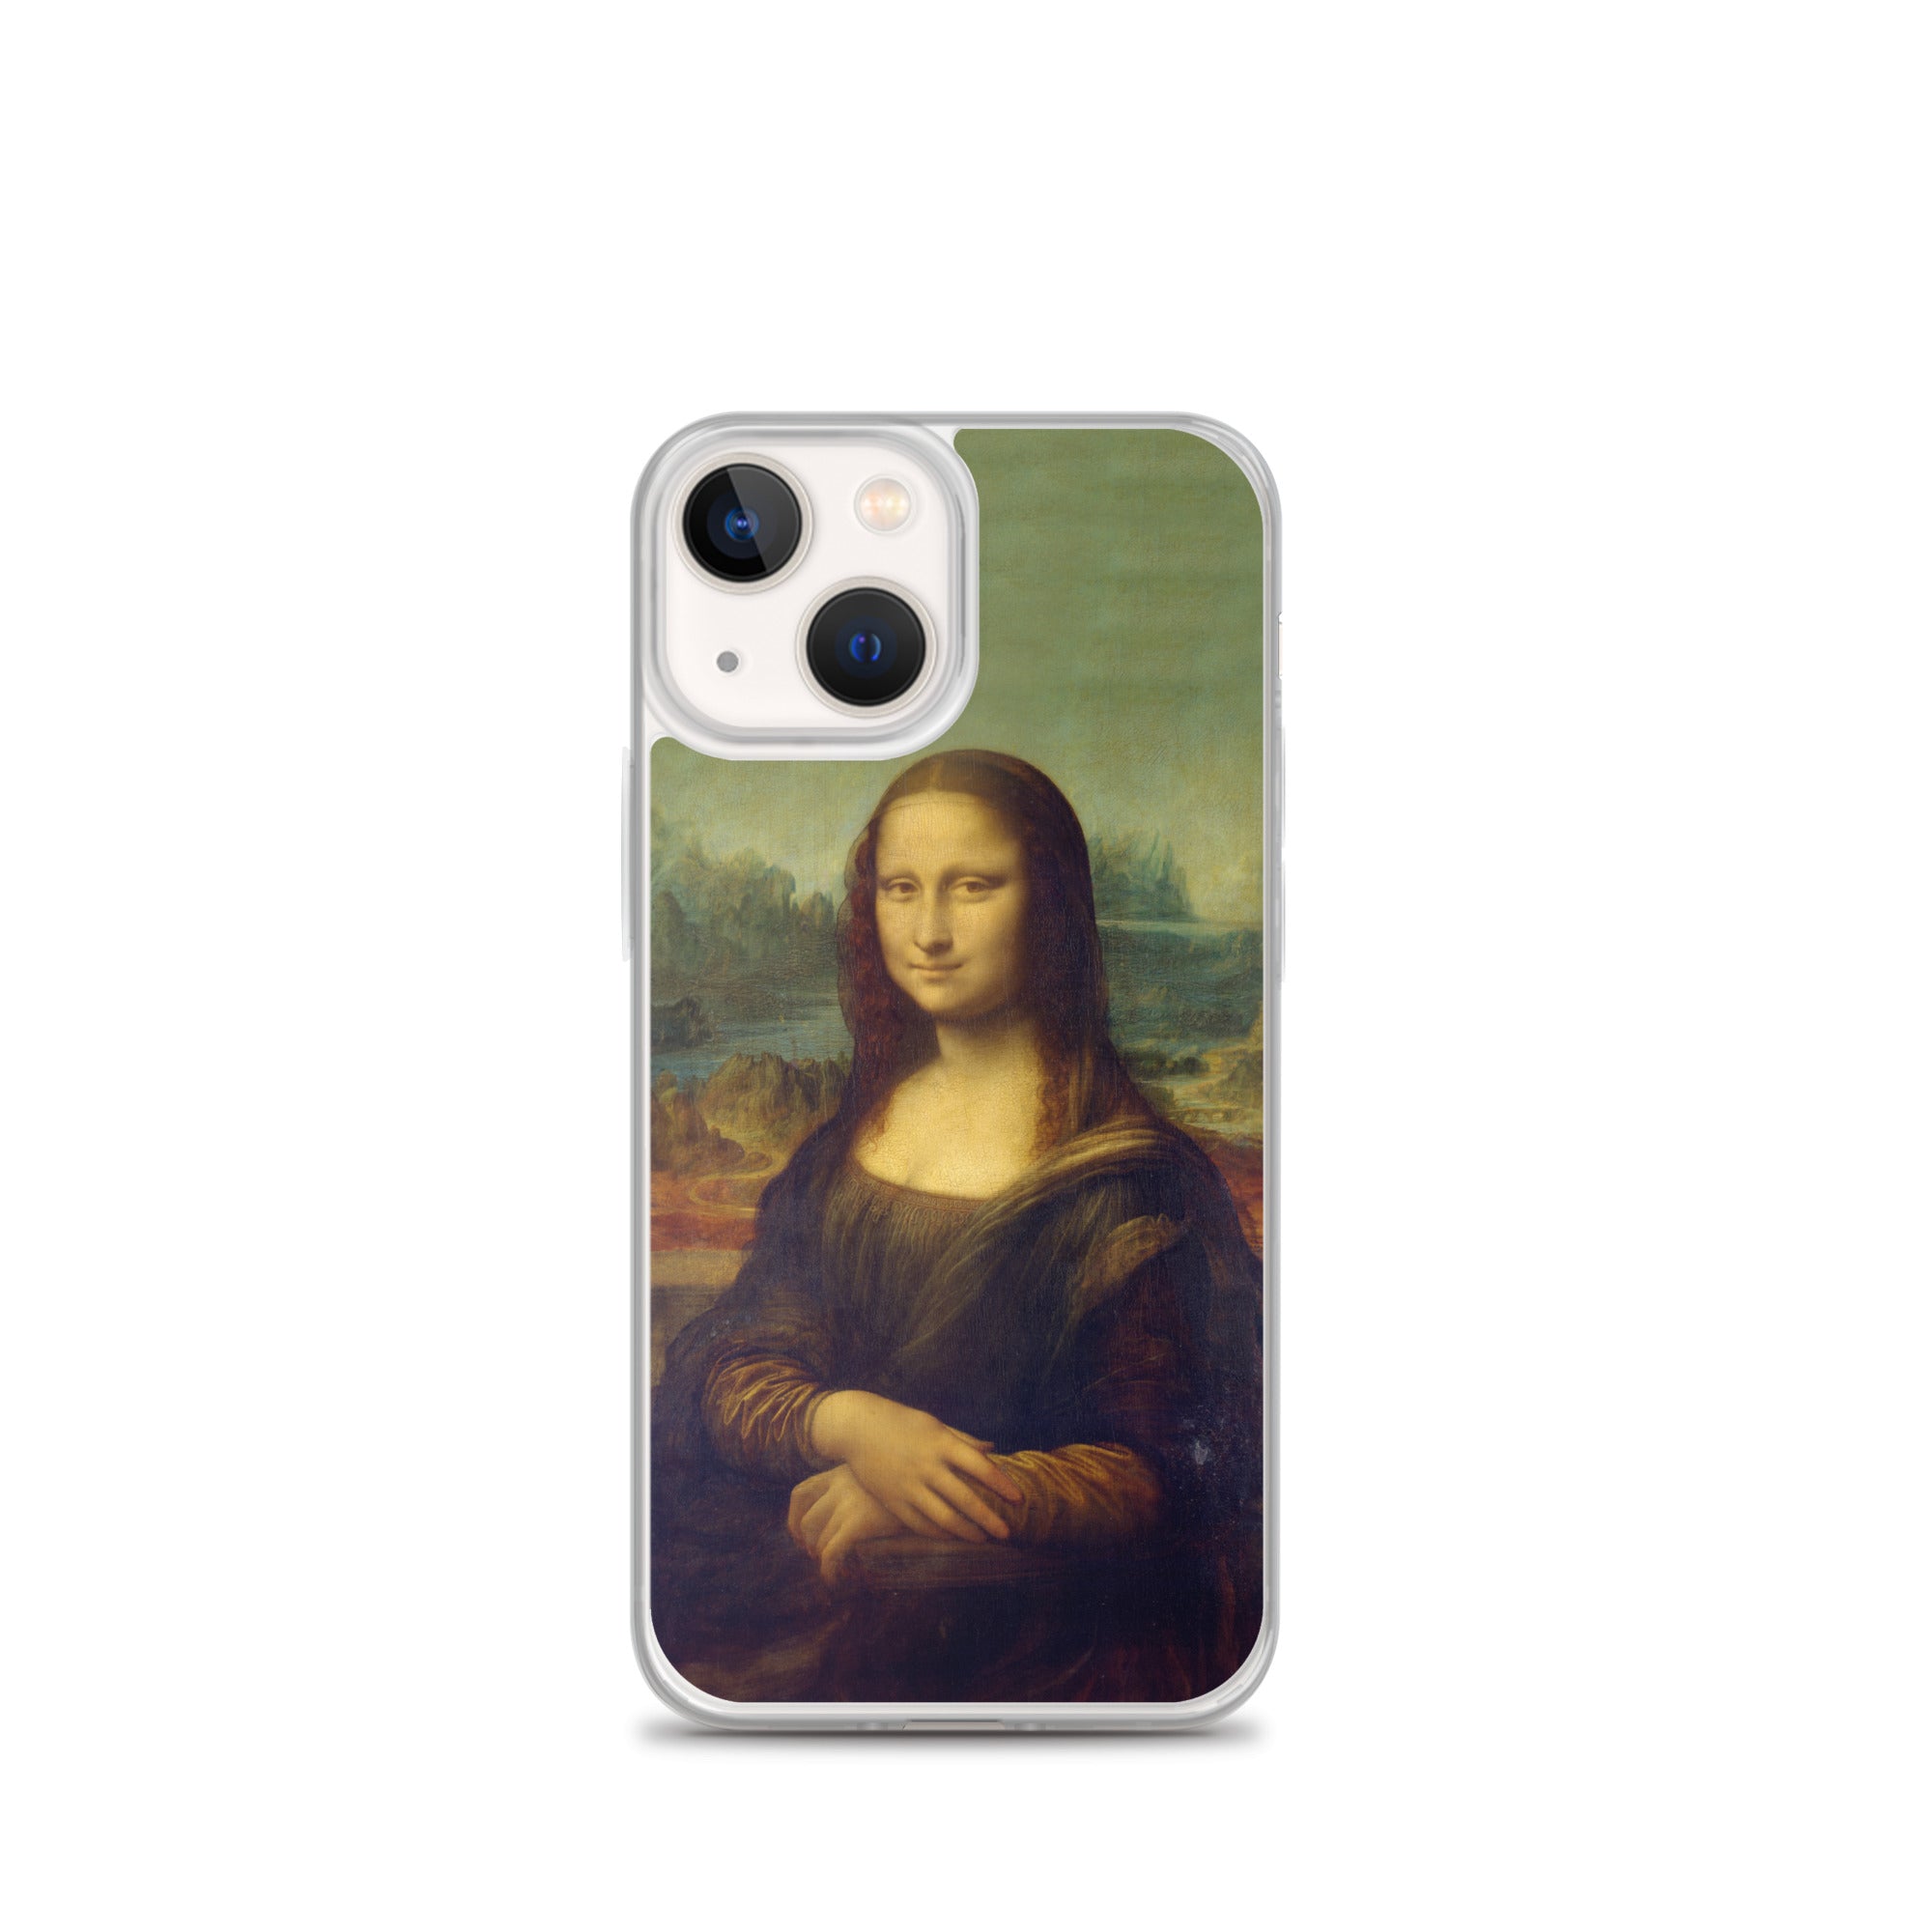 Leonardo da Vinci „Mona Lisa“ – berühmtes Gemälde – iPhone®-Hülle | Transparente Kunsthülle für iPhone®